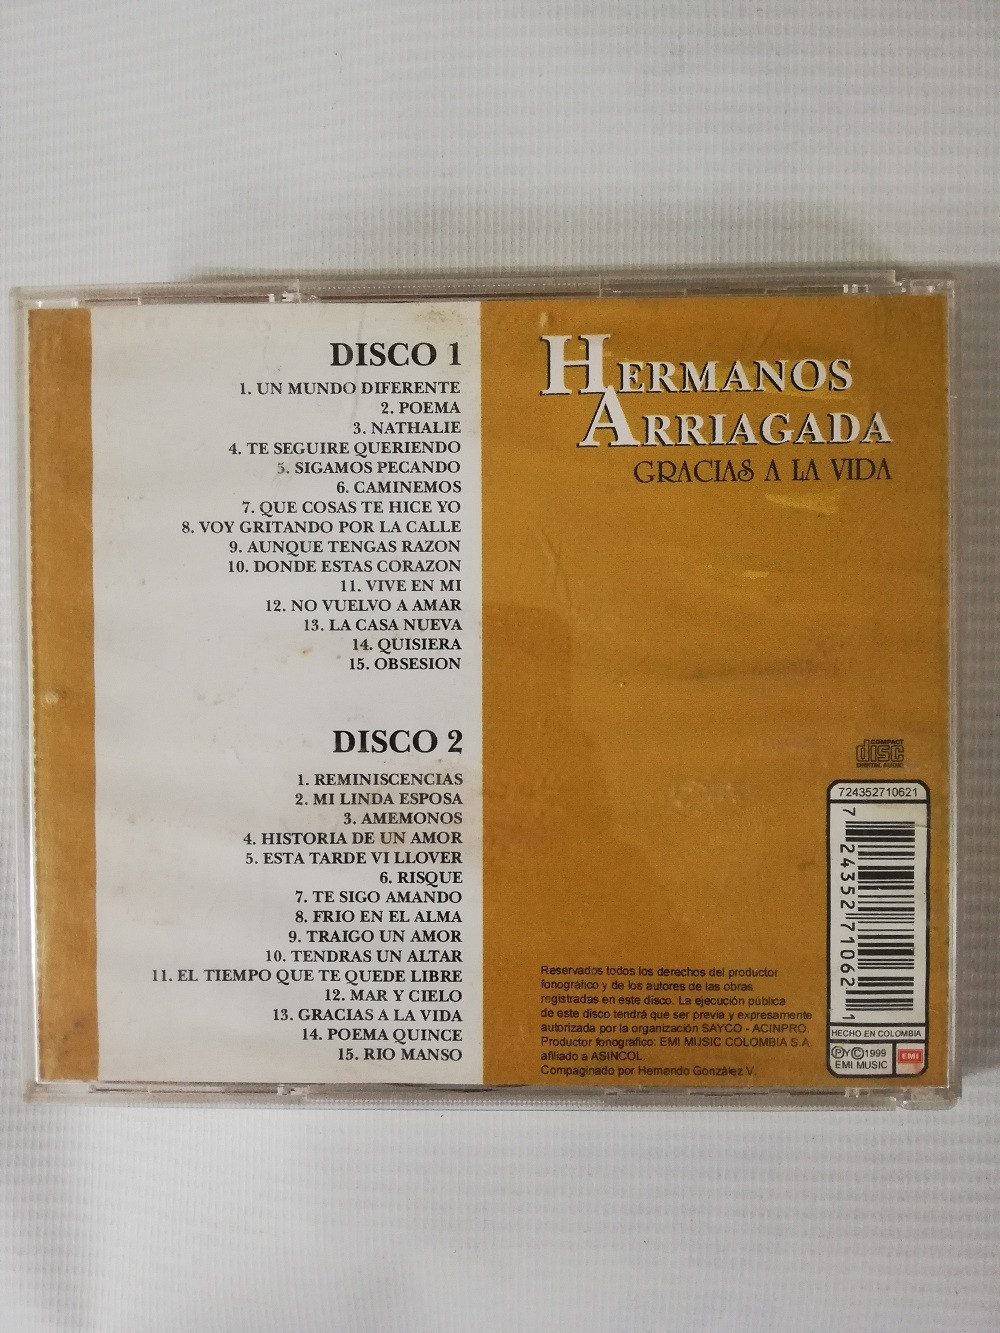 Imagen CD X 2 HERMANOS ARRIAGADA - GRACIAS A LA VIDA 2